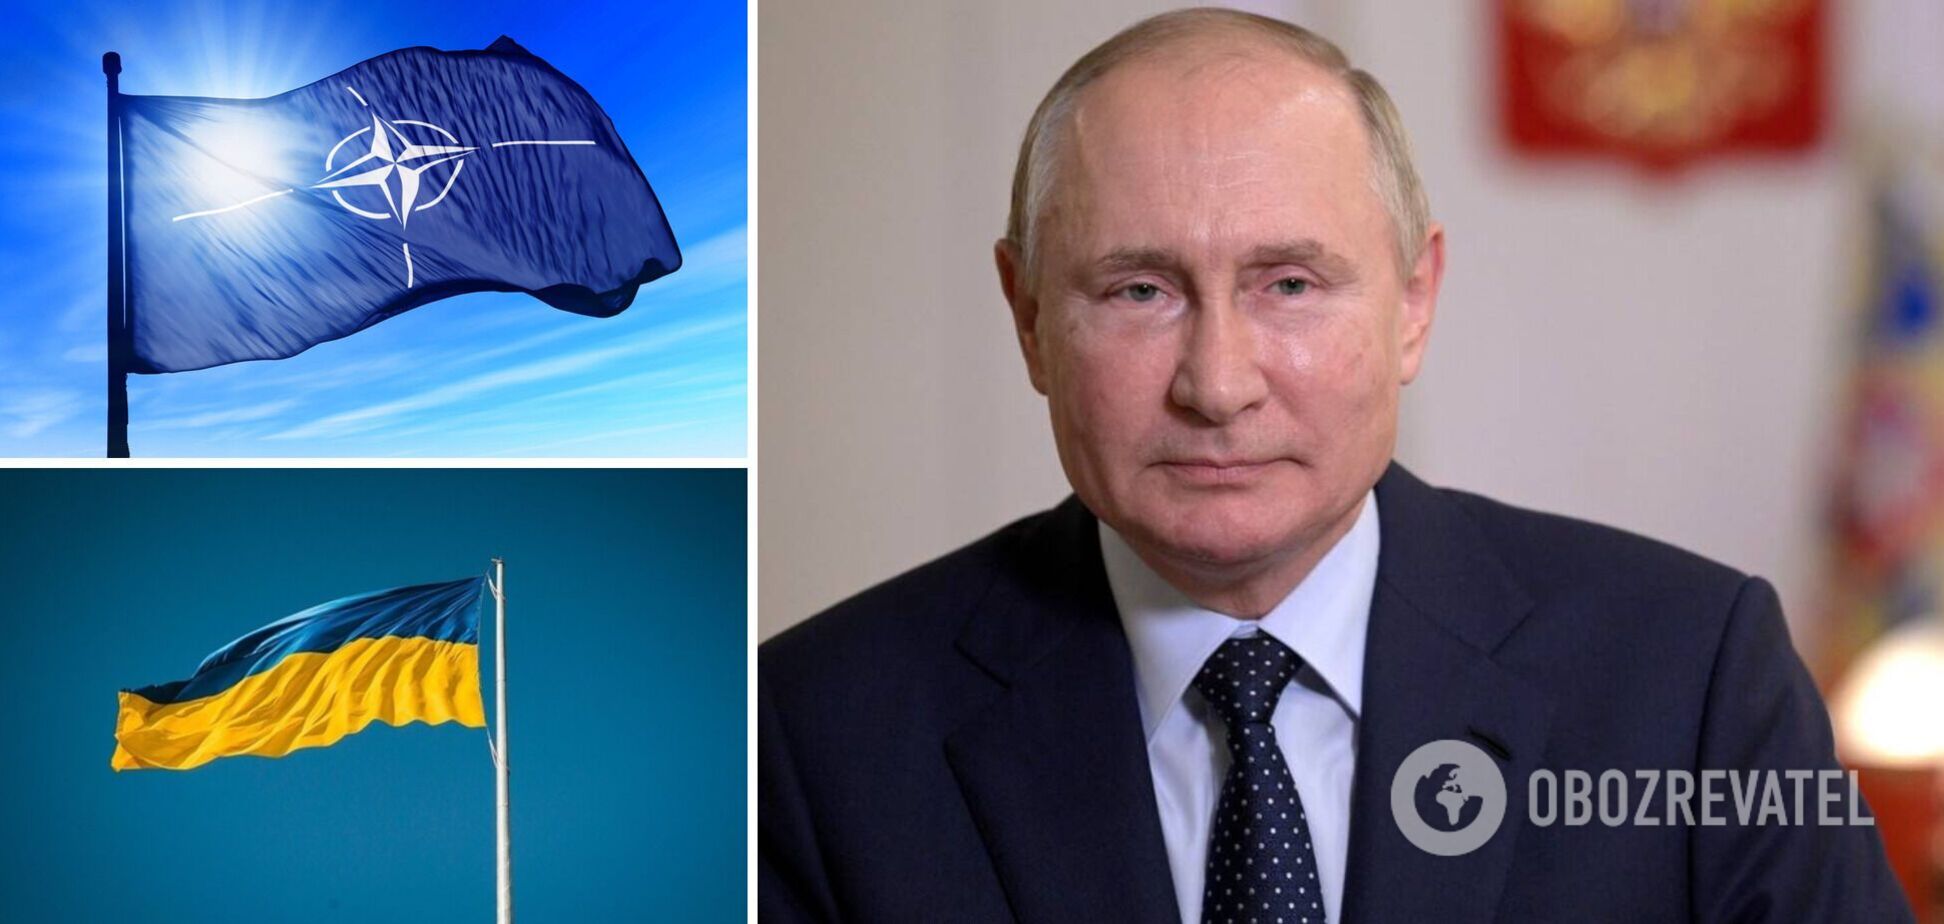 Песков: Путин готов вести переговоры по Украине и 'гарантиям безопасности'